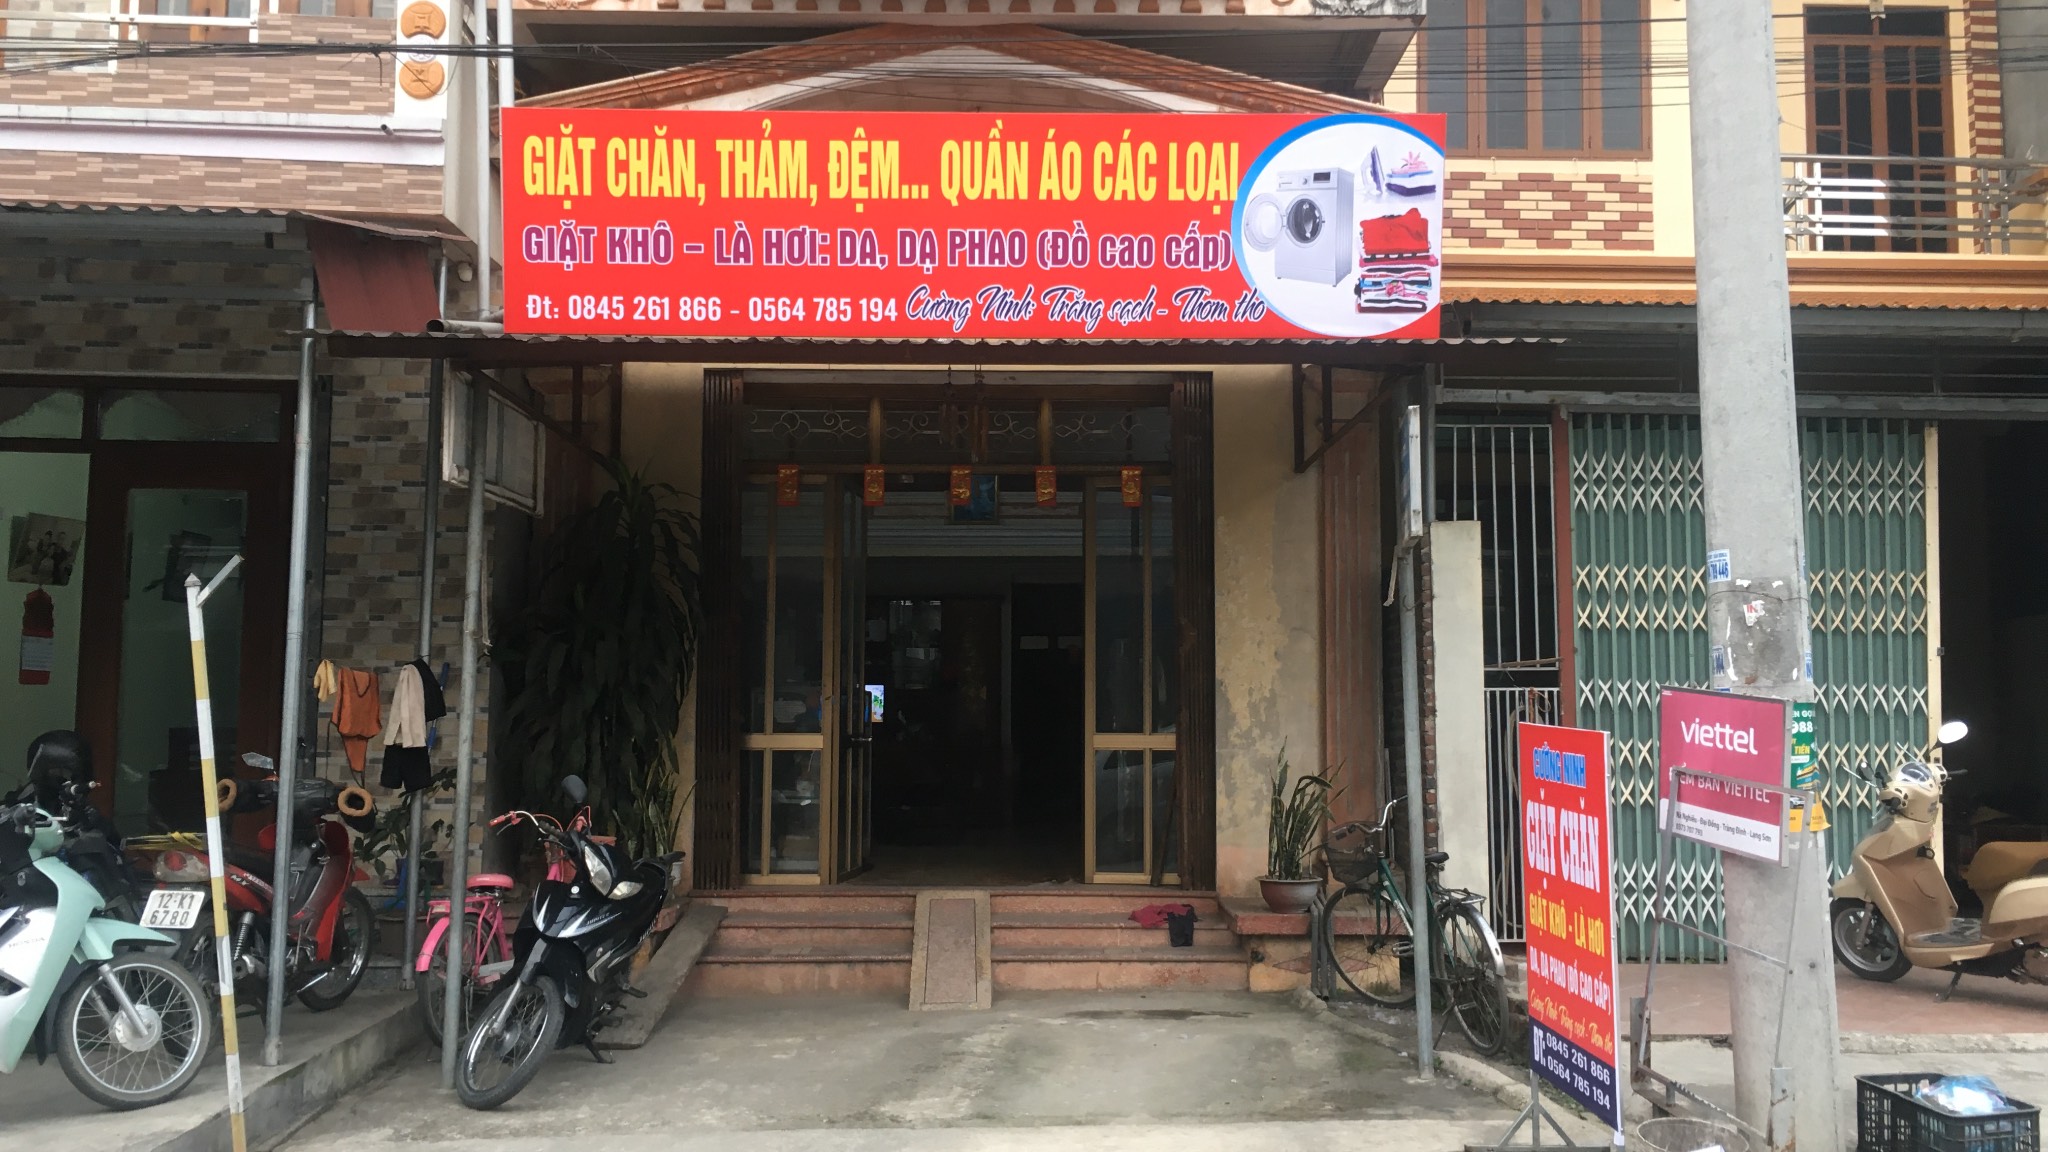 Vận chuyển máy vắt và máy sấy đi Tràng Định- Lạng Sơn